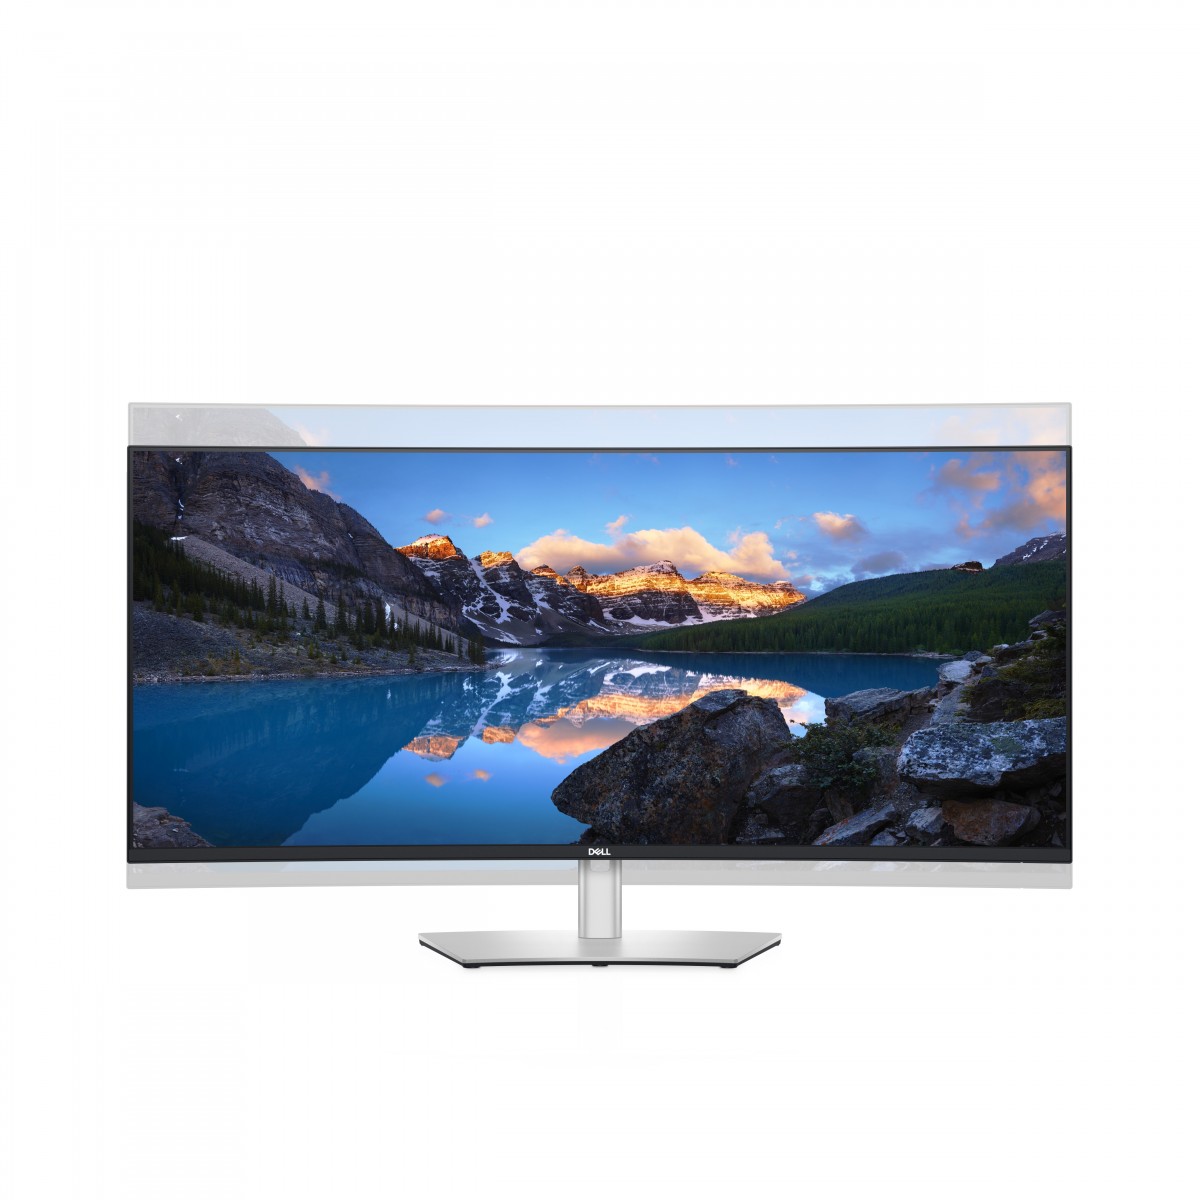 Dell UltraSharp U4021QW - 100.8 cm (39.7) - 5120 x 2160 pixels - LCD - 8 ms - Black - Silver